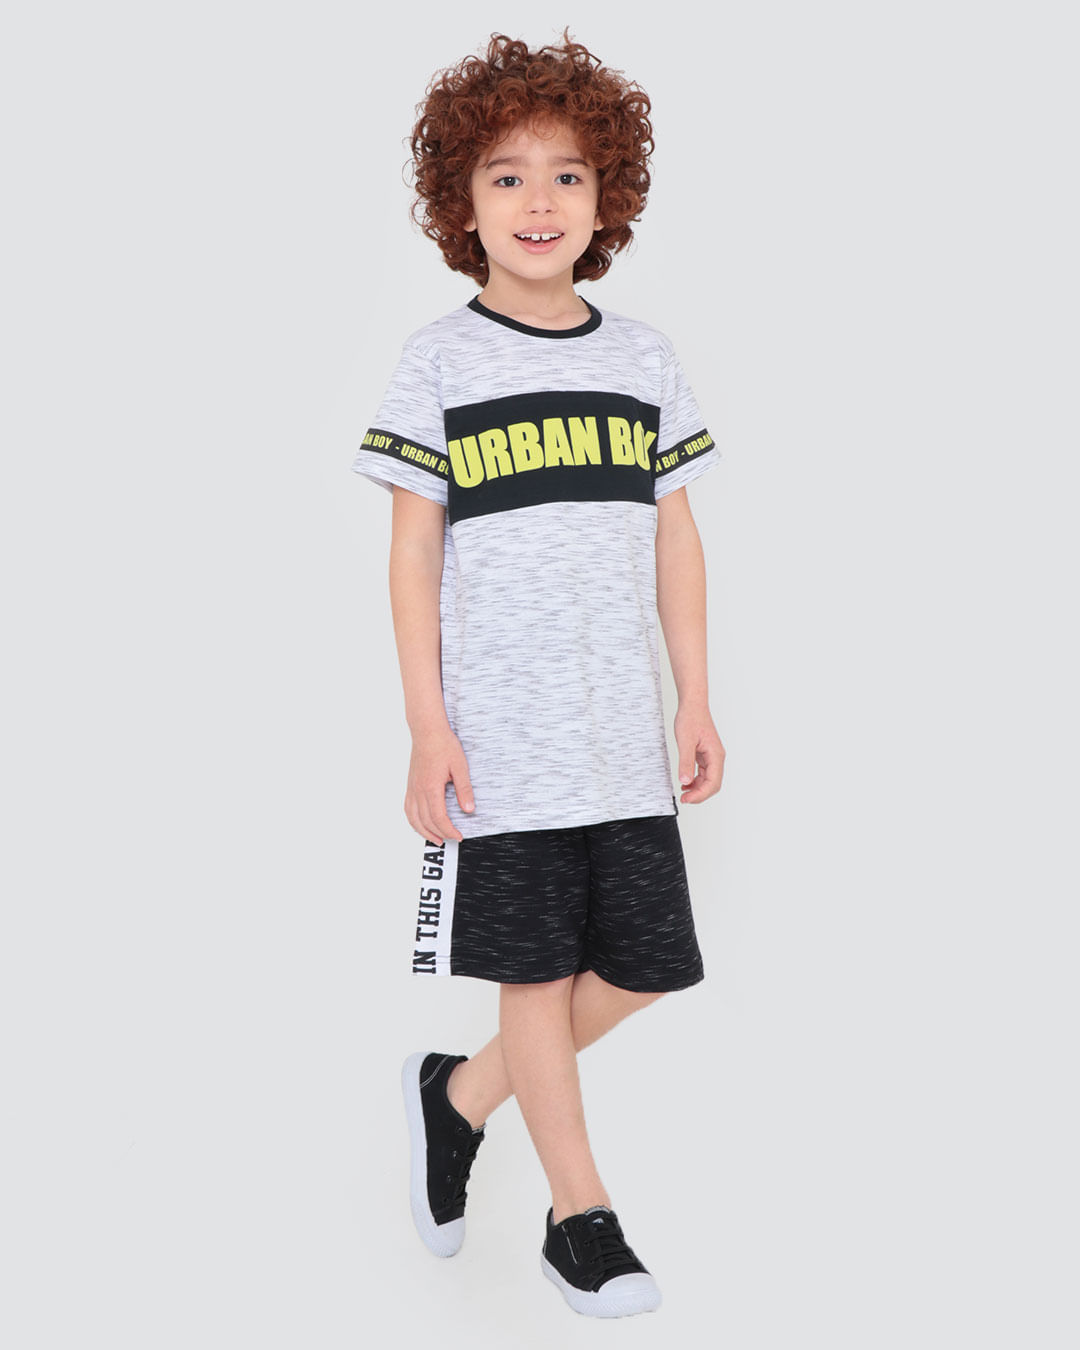 Camiseta-Infantil-Flame-Estampa-Urban-Boy-Branca